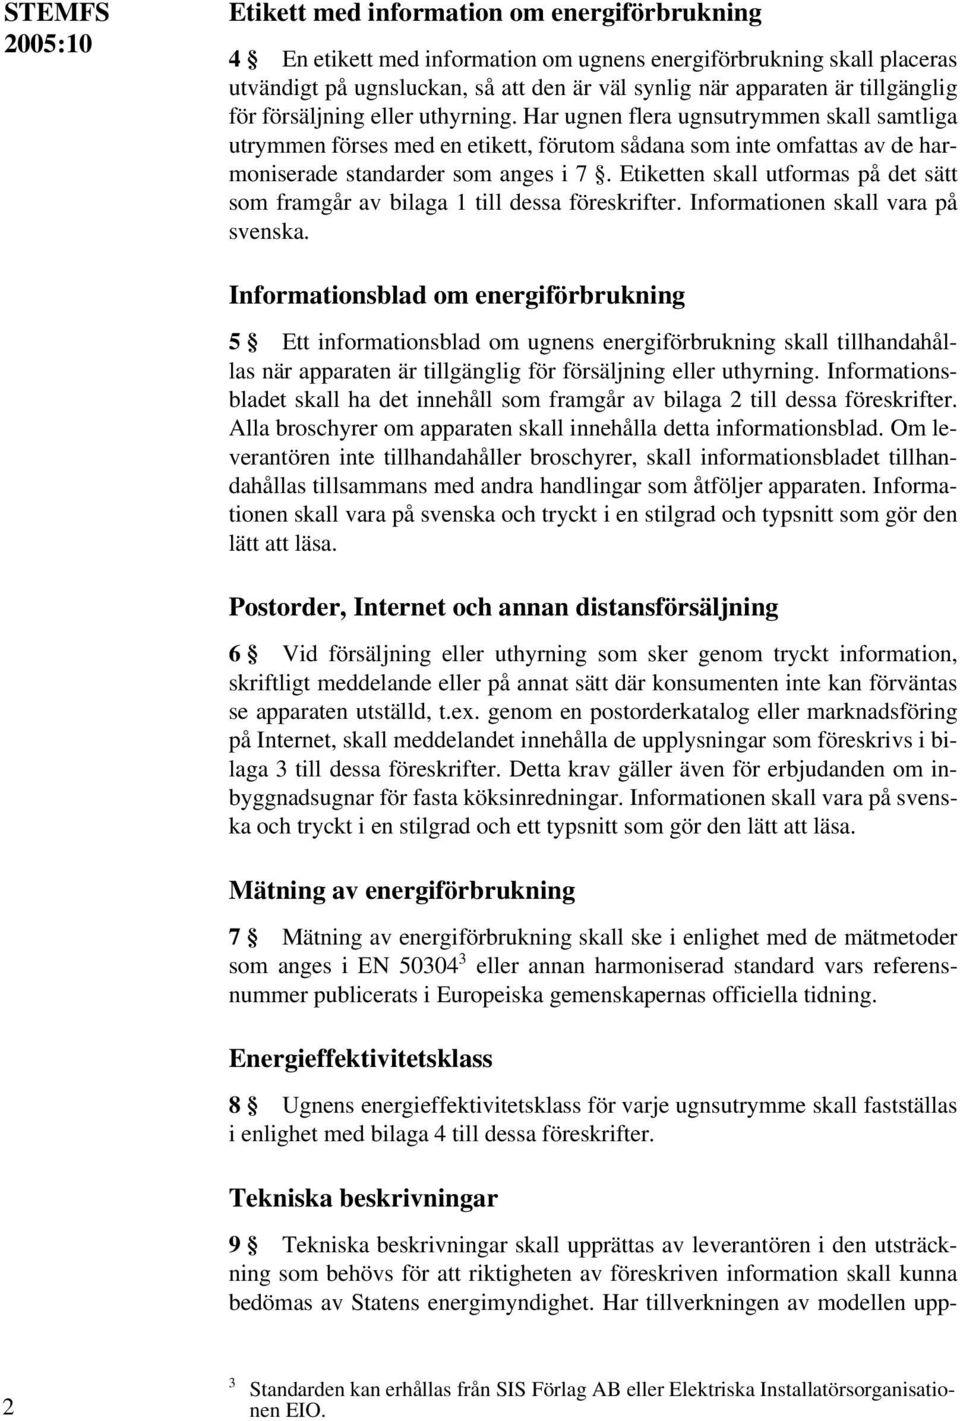 Etiketten skall utformas på det sätt som framgår av bilaga 1 till dessa föreskrifter. Informationen skall vara på svenska.